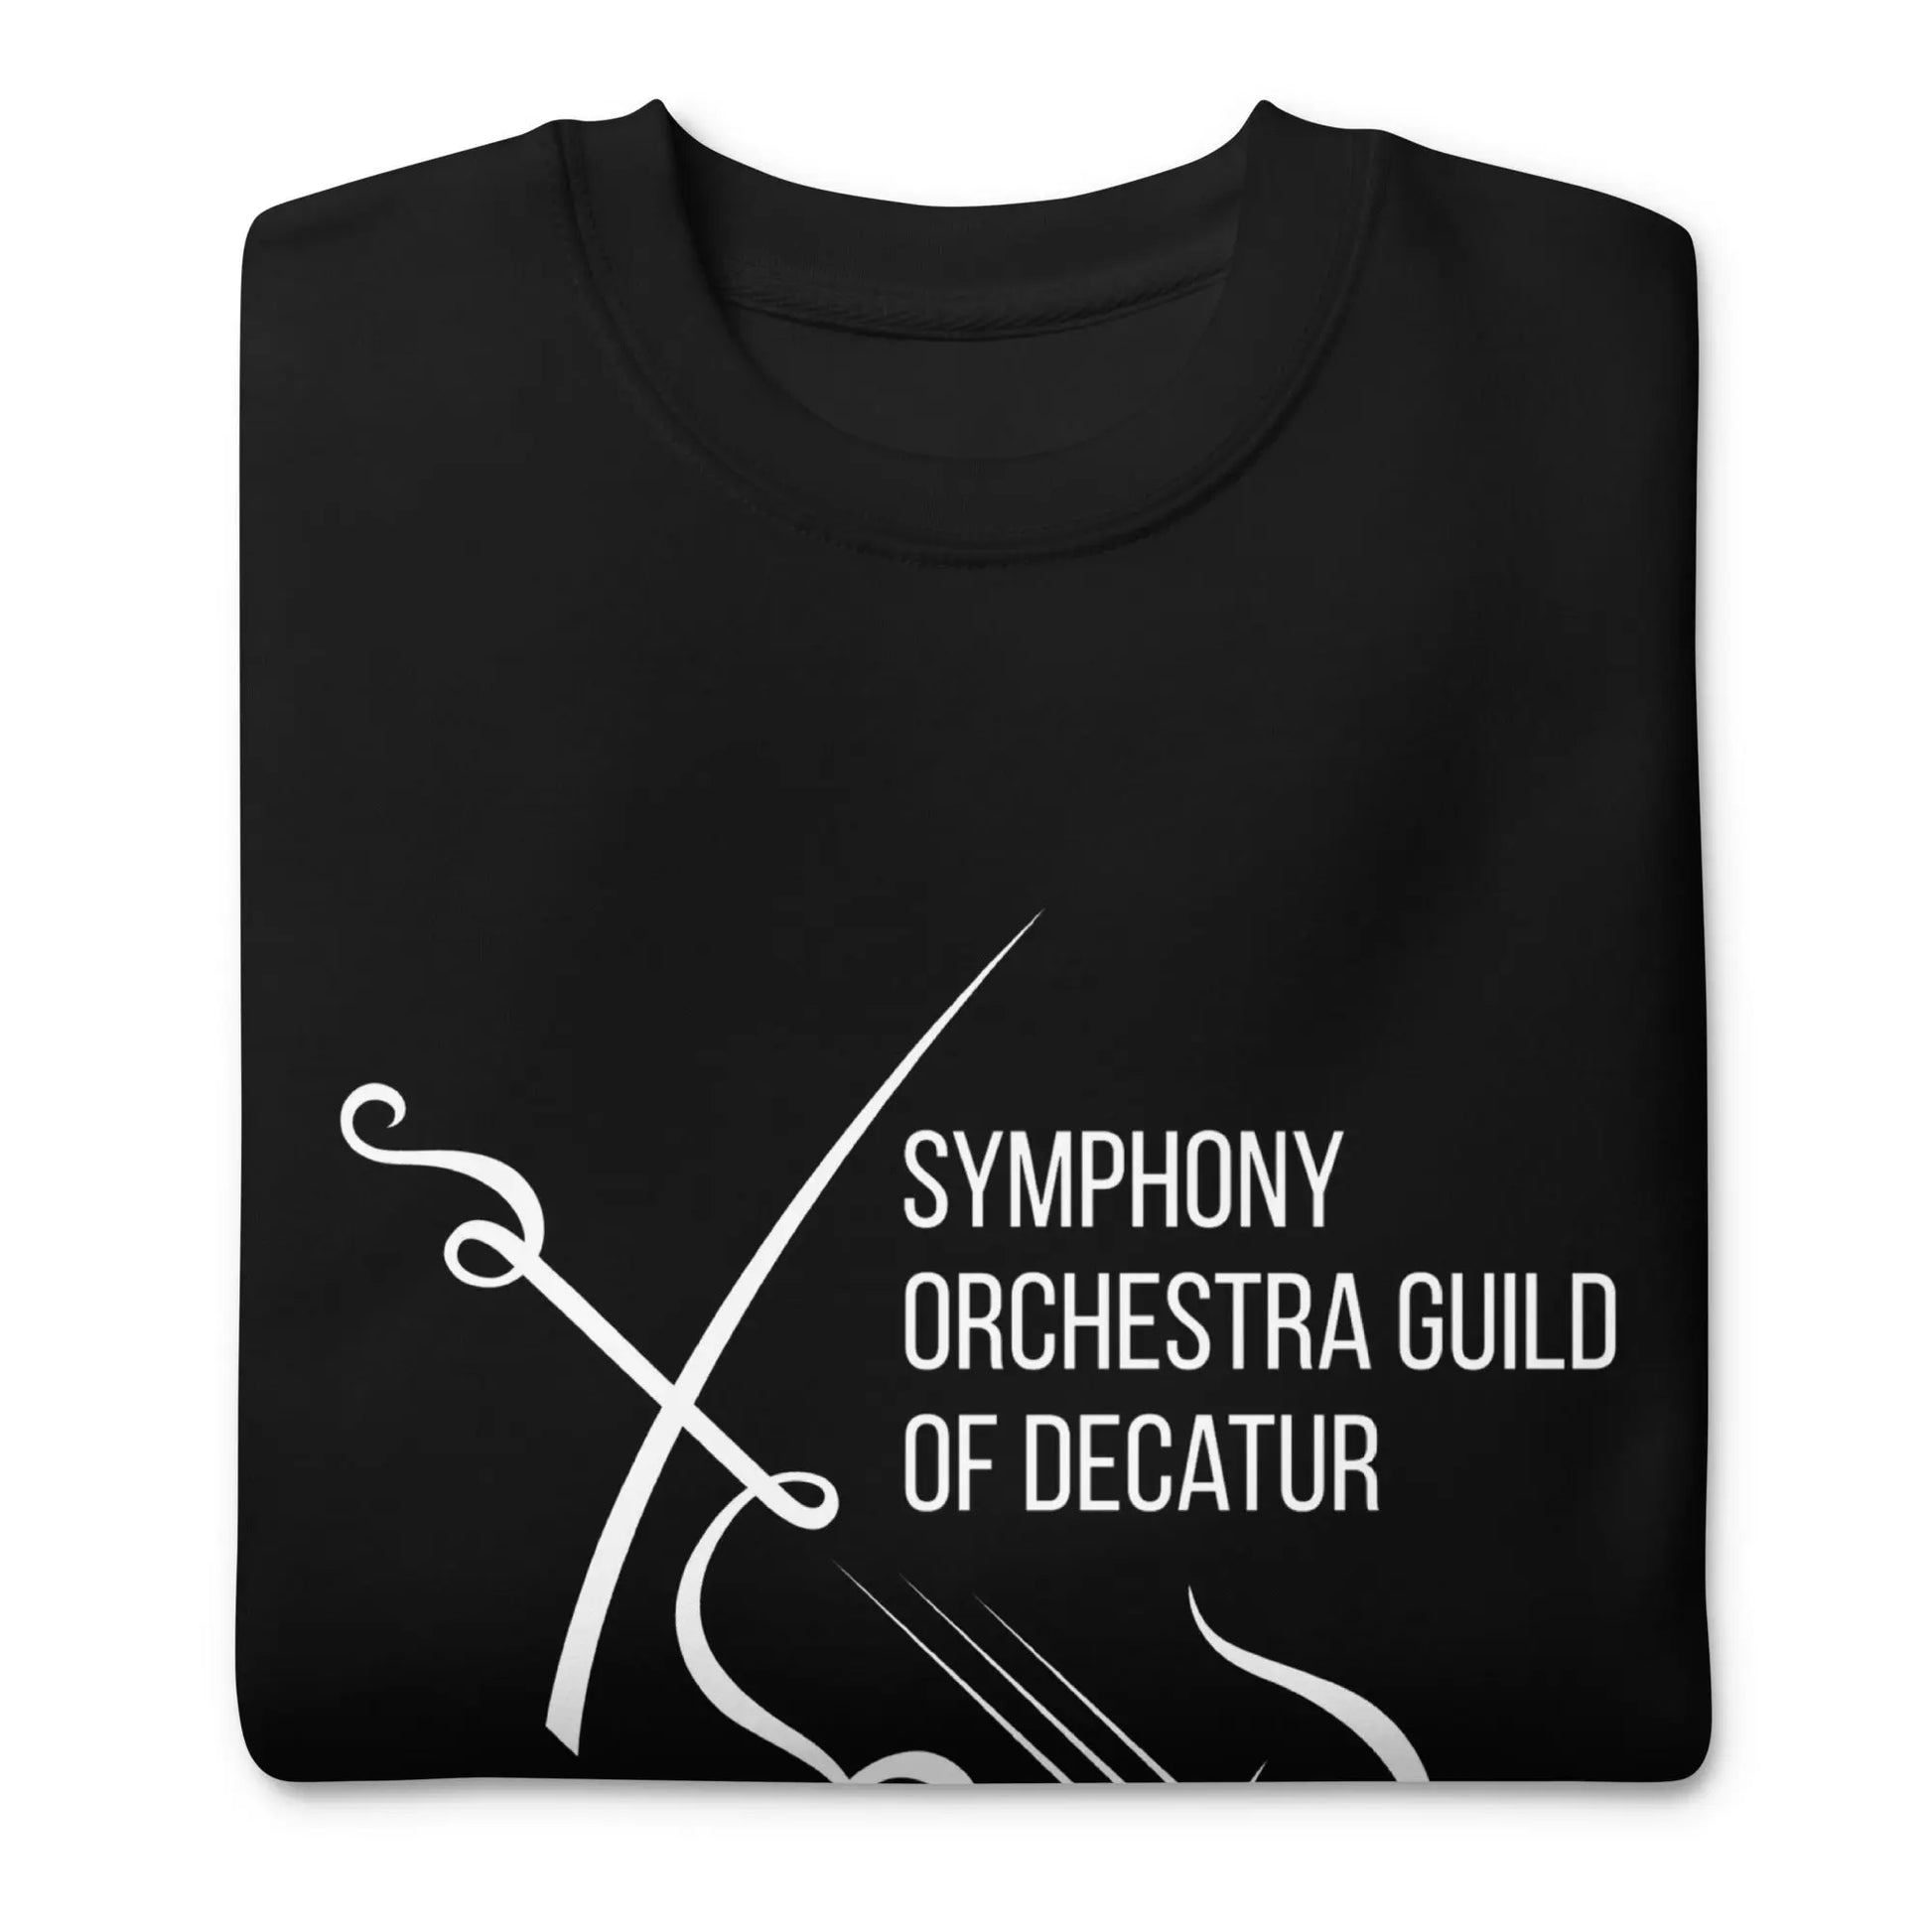 Symphony Orchestra Guild of Decatur Unisex Premium Sweatshirt - Amazing Faith Designs